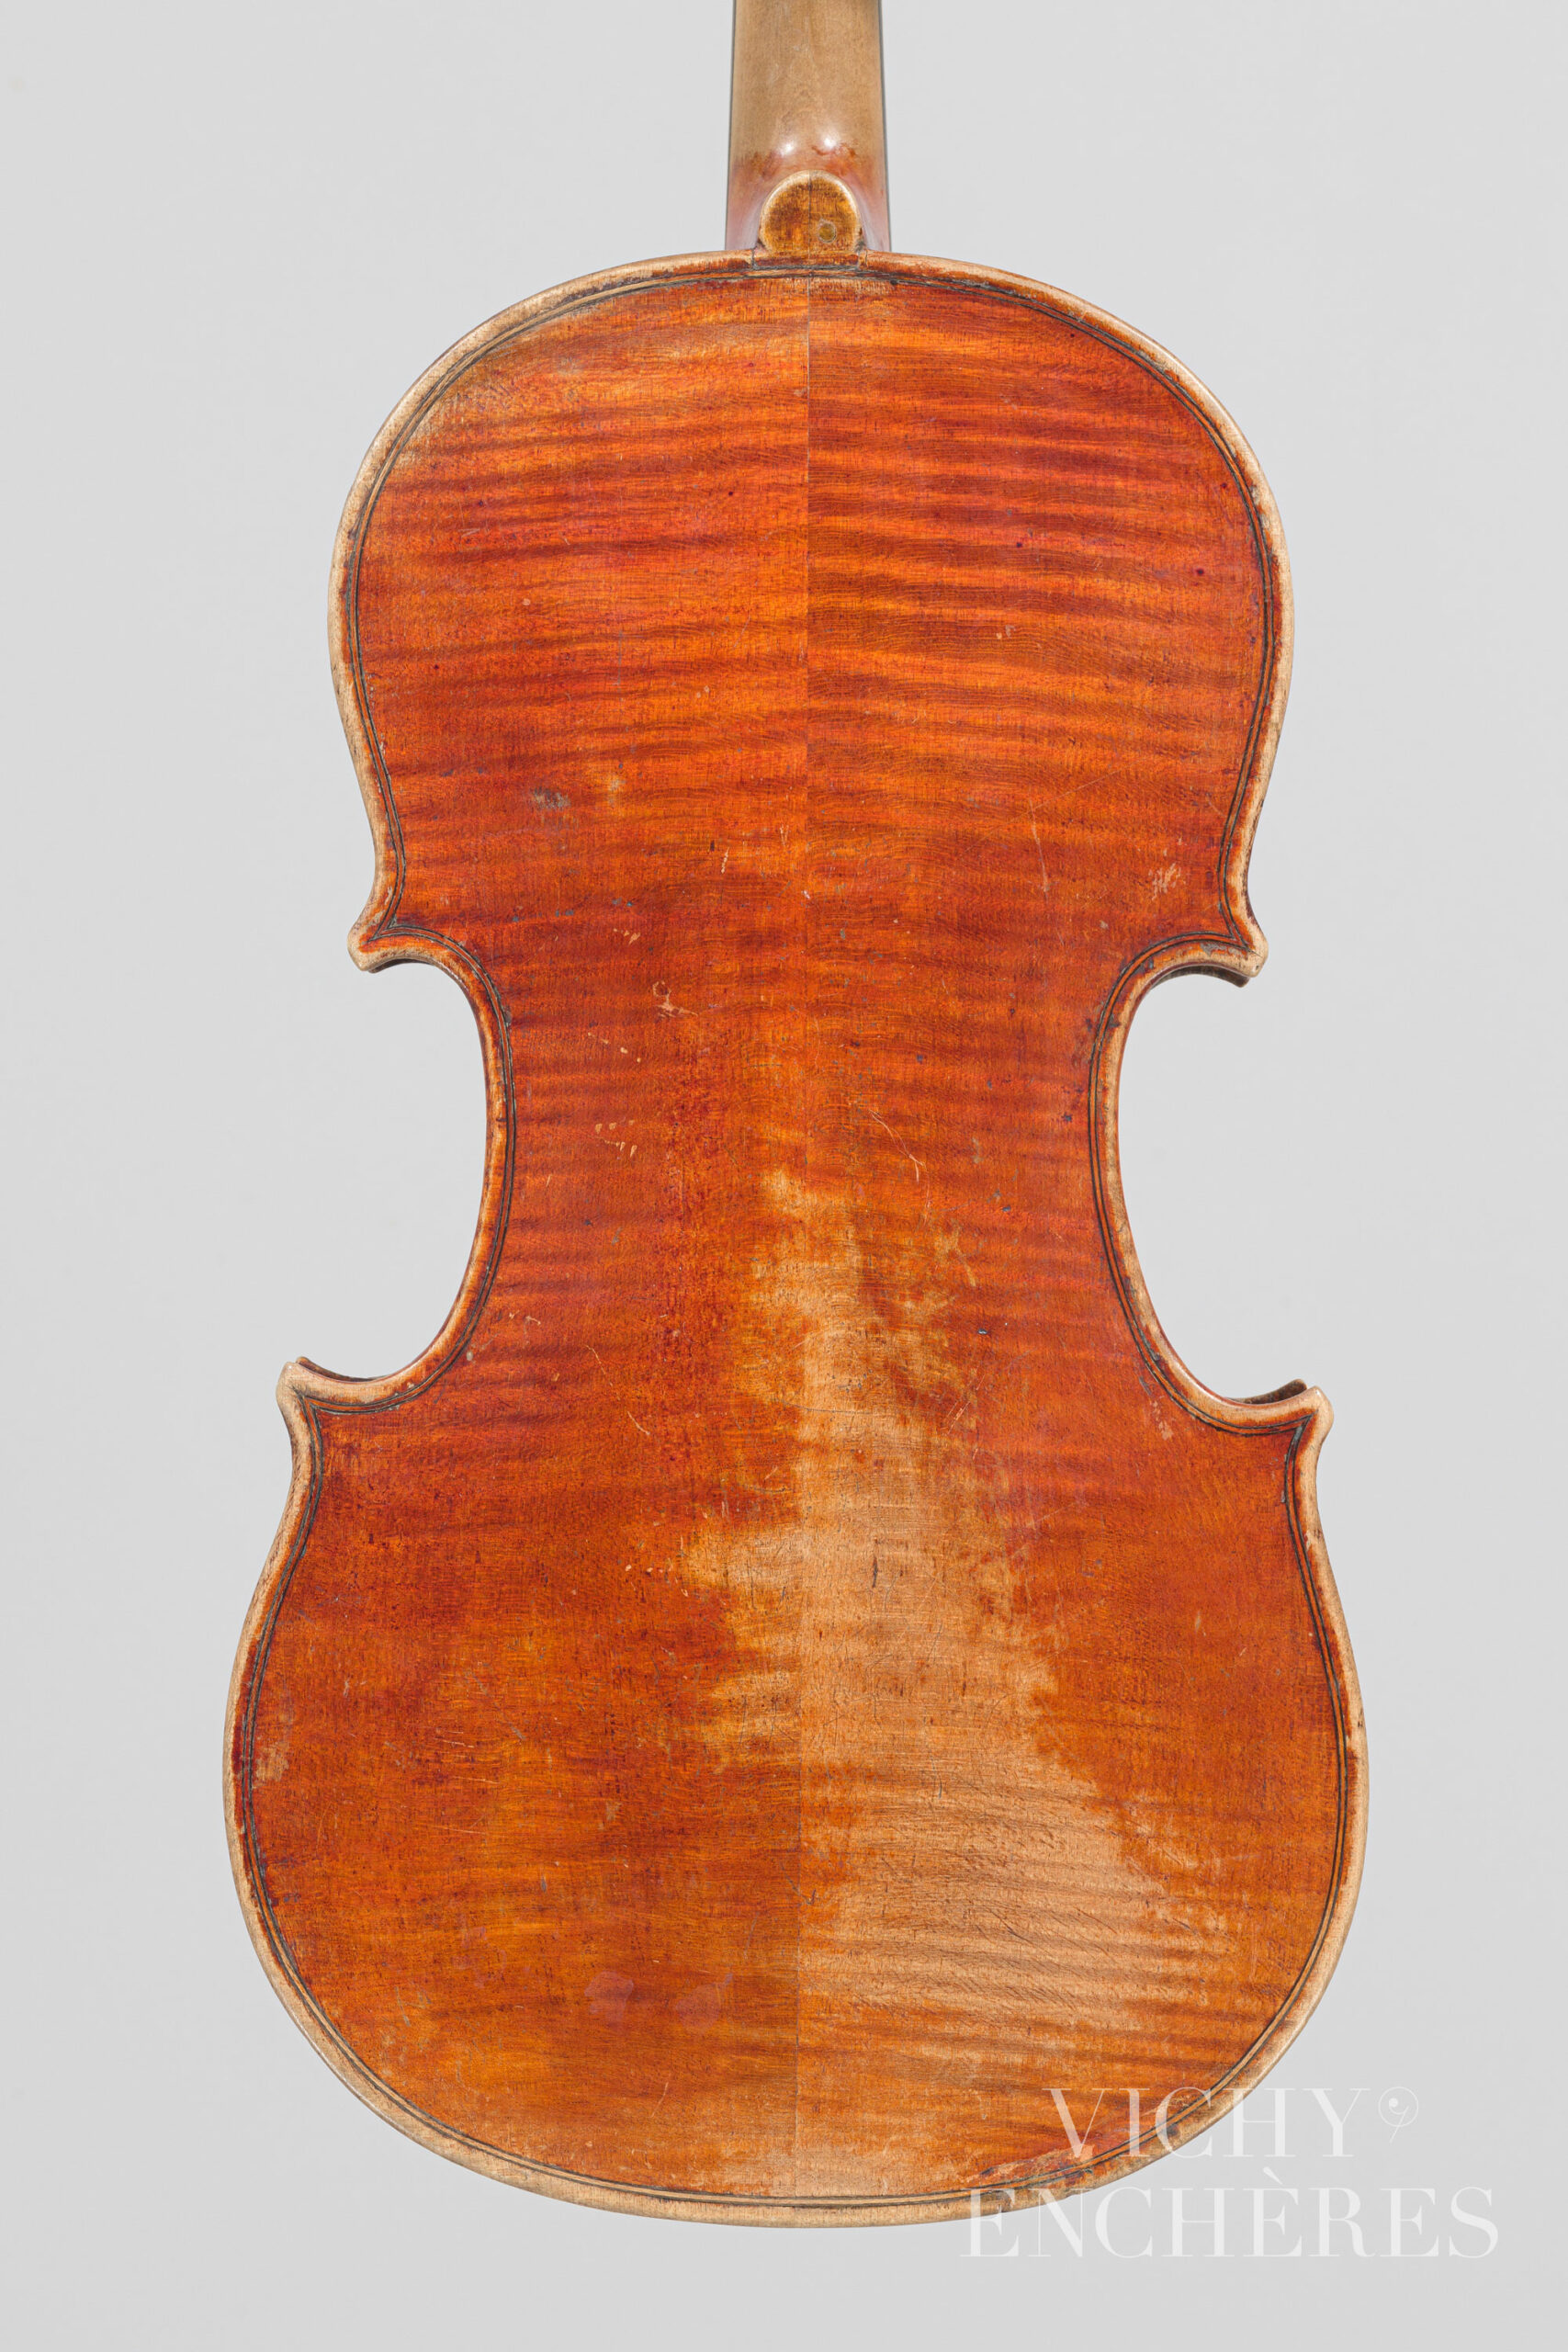 Violon 3/4 de Stefano SCARAMPELLA Instrument mis en vente par Vichy Enchères le 1er décembre 2022 © Christophe Darbelet